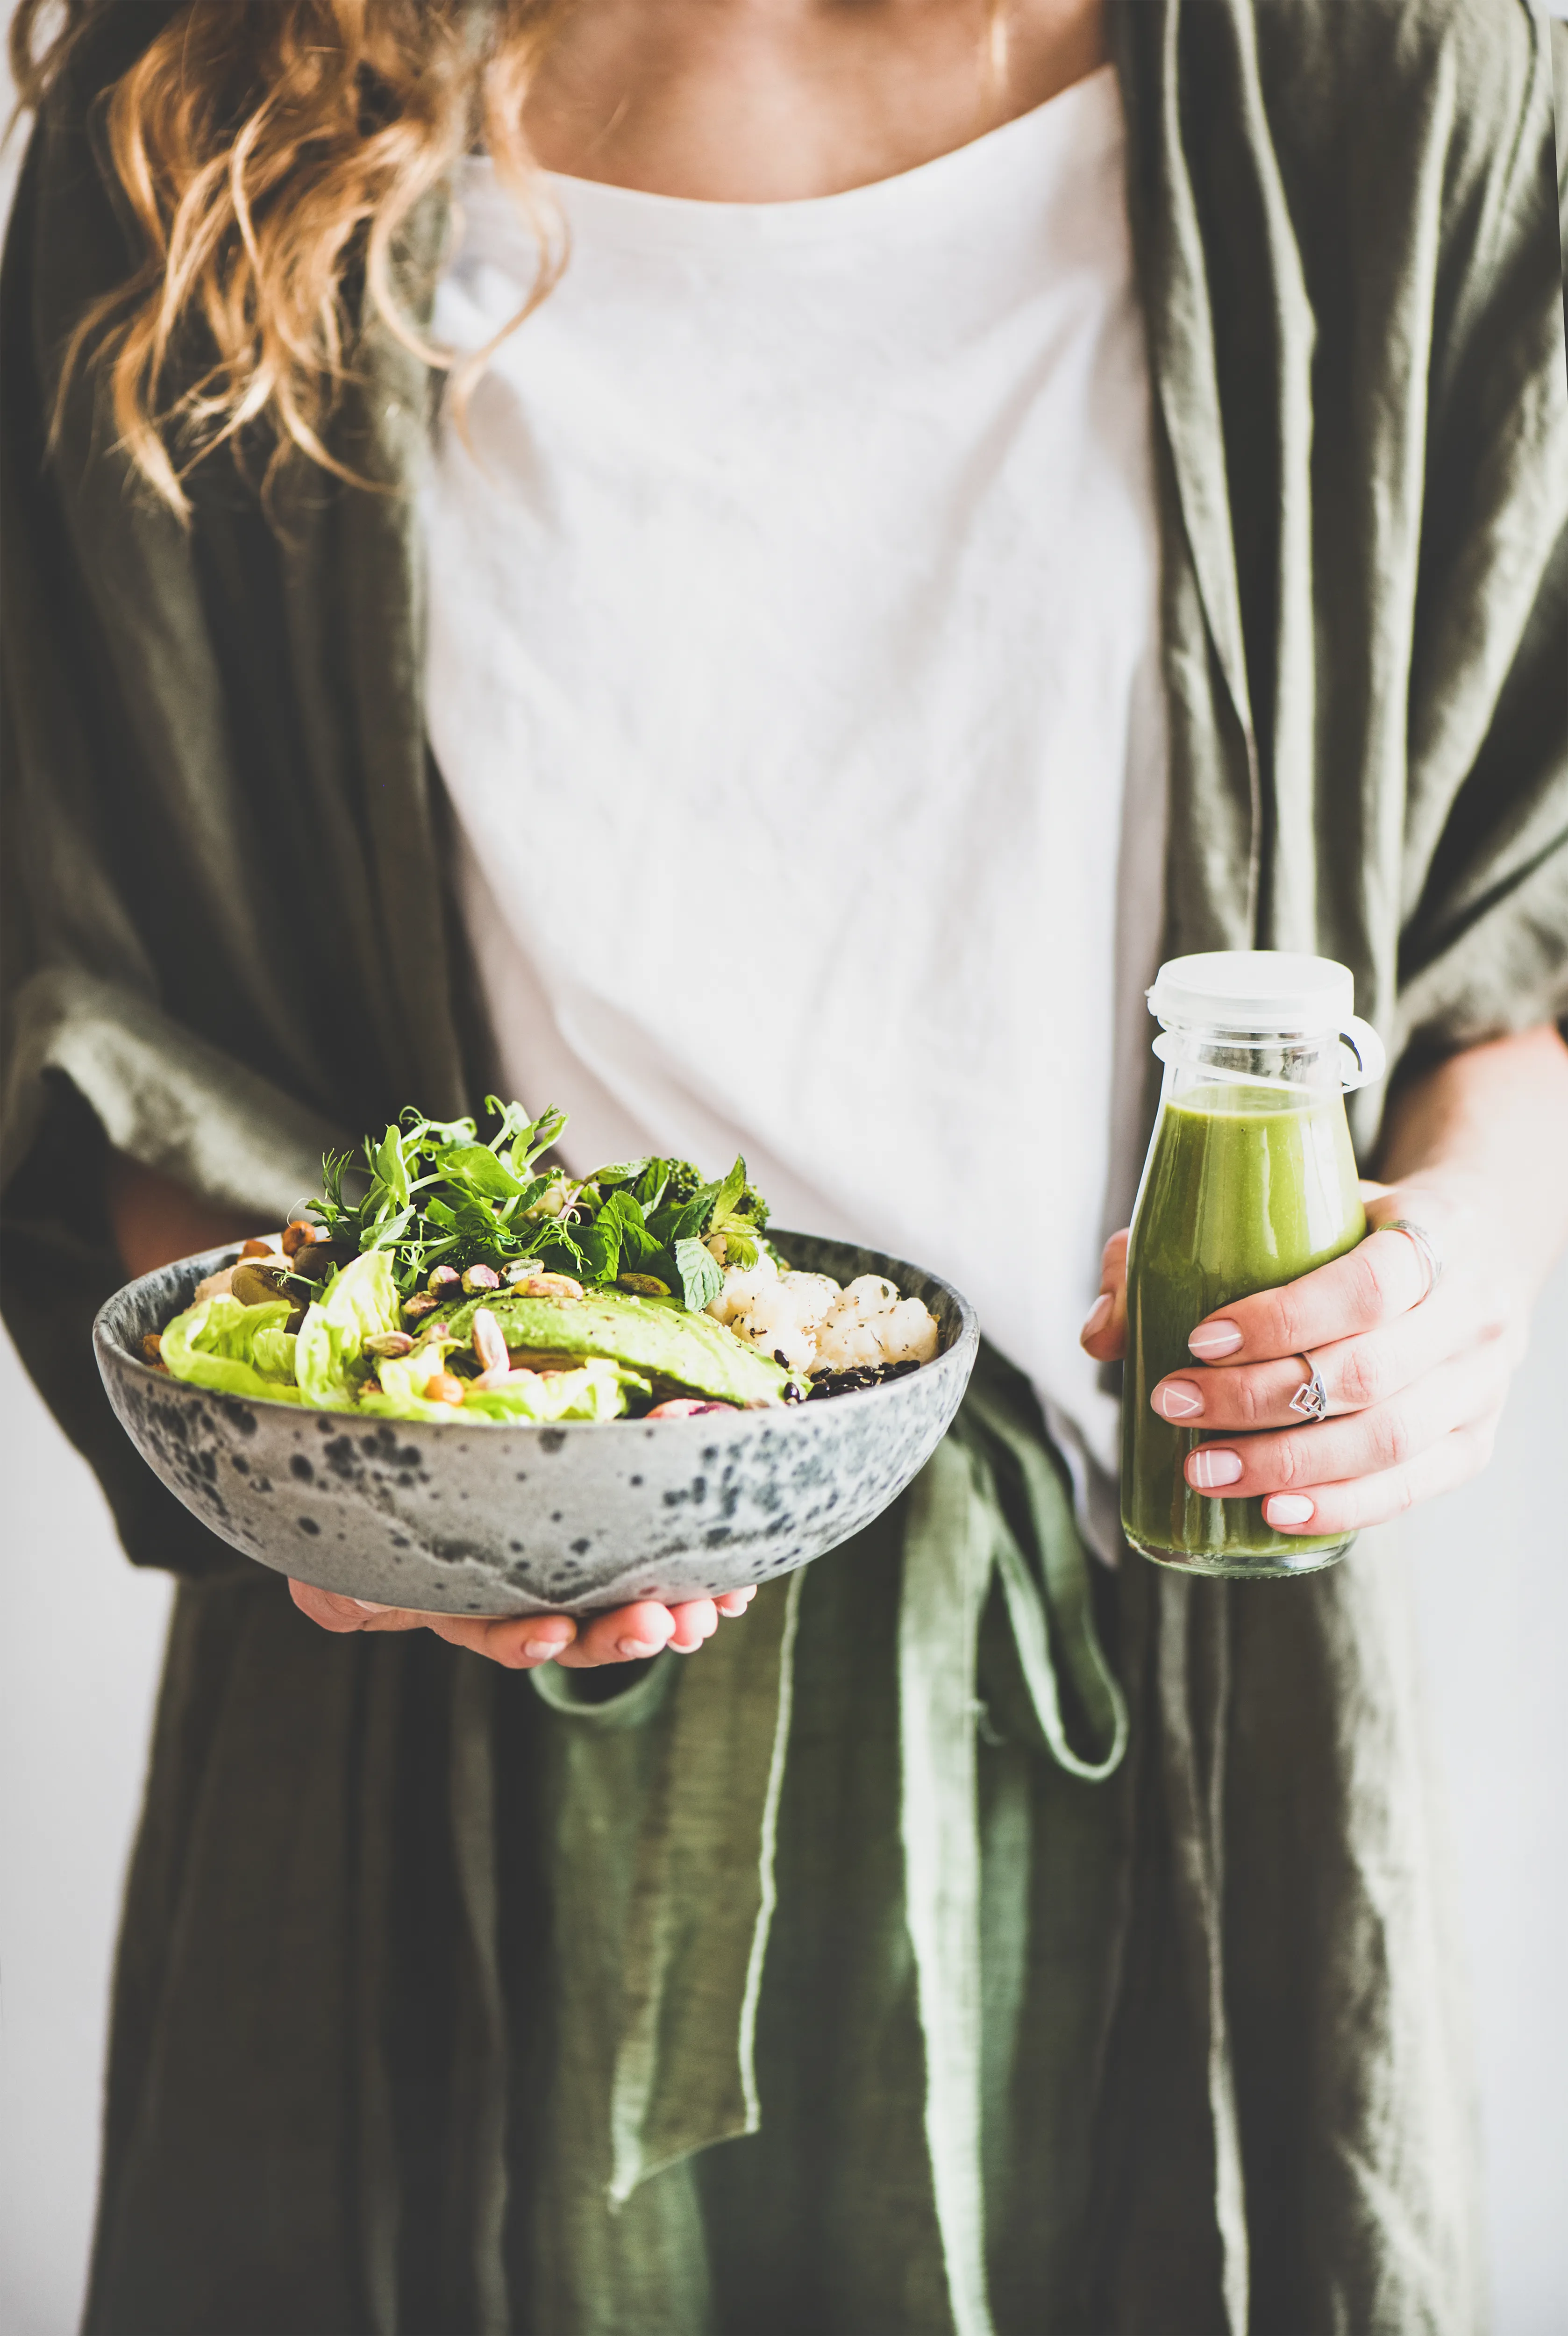 Frau hält grünen Salat und grünen Smoothie in den Händen